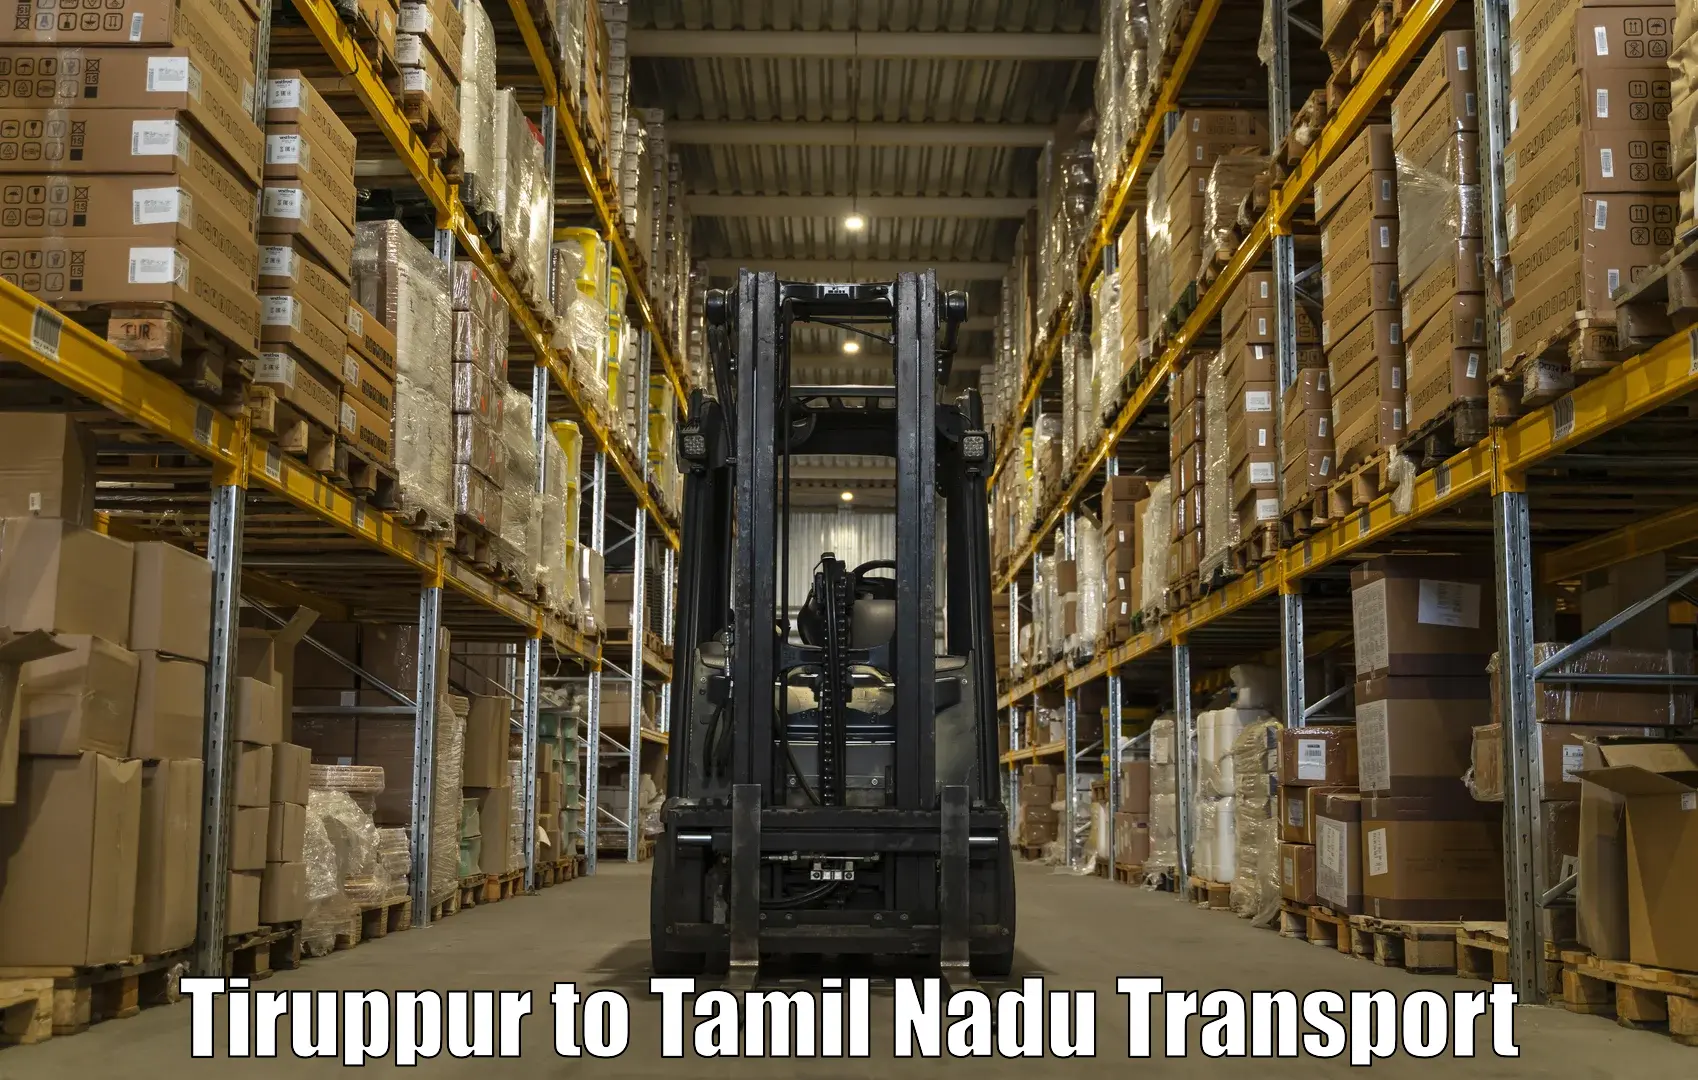 Nearby transport service Tiruppur to IIIT Tiruchirappalli